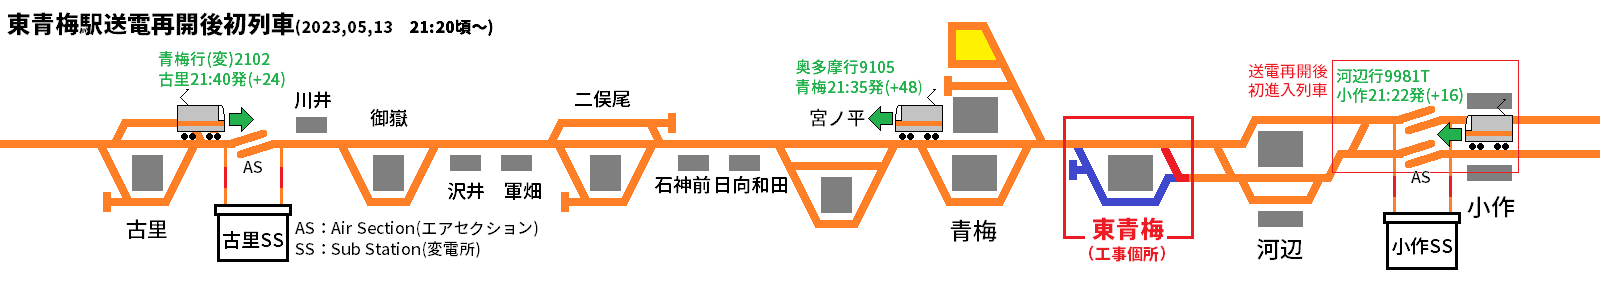 送電再開後初列車の位置と発車時刻の関係